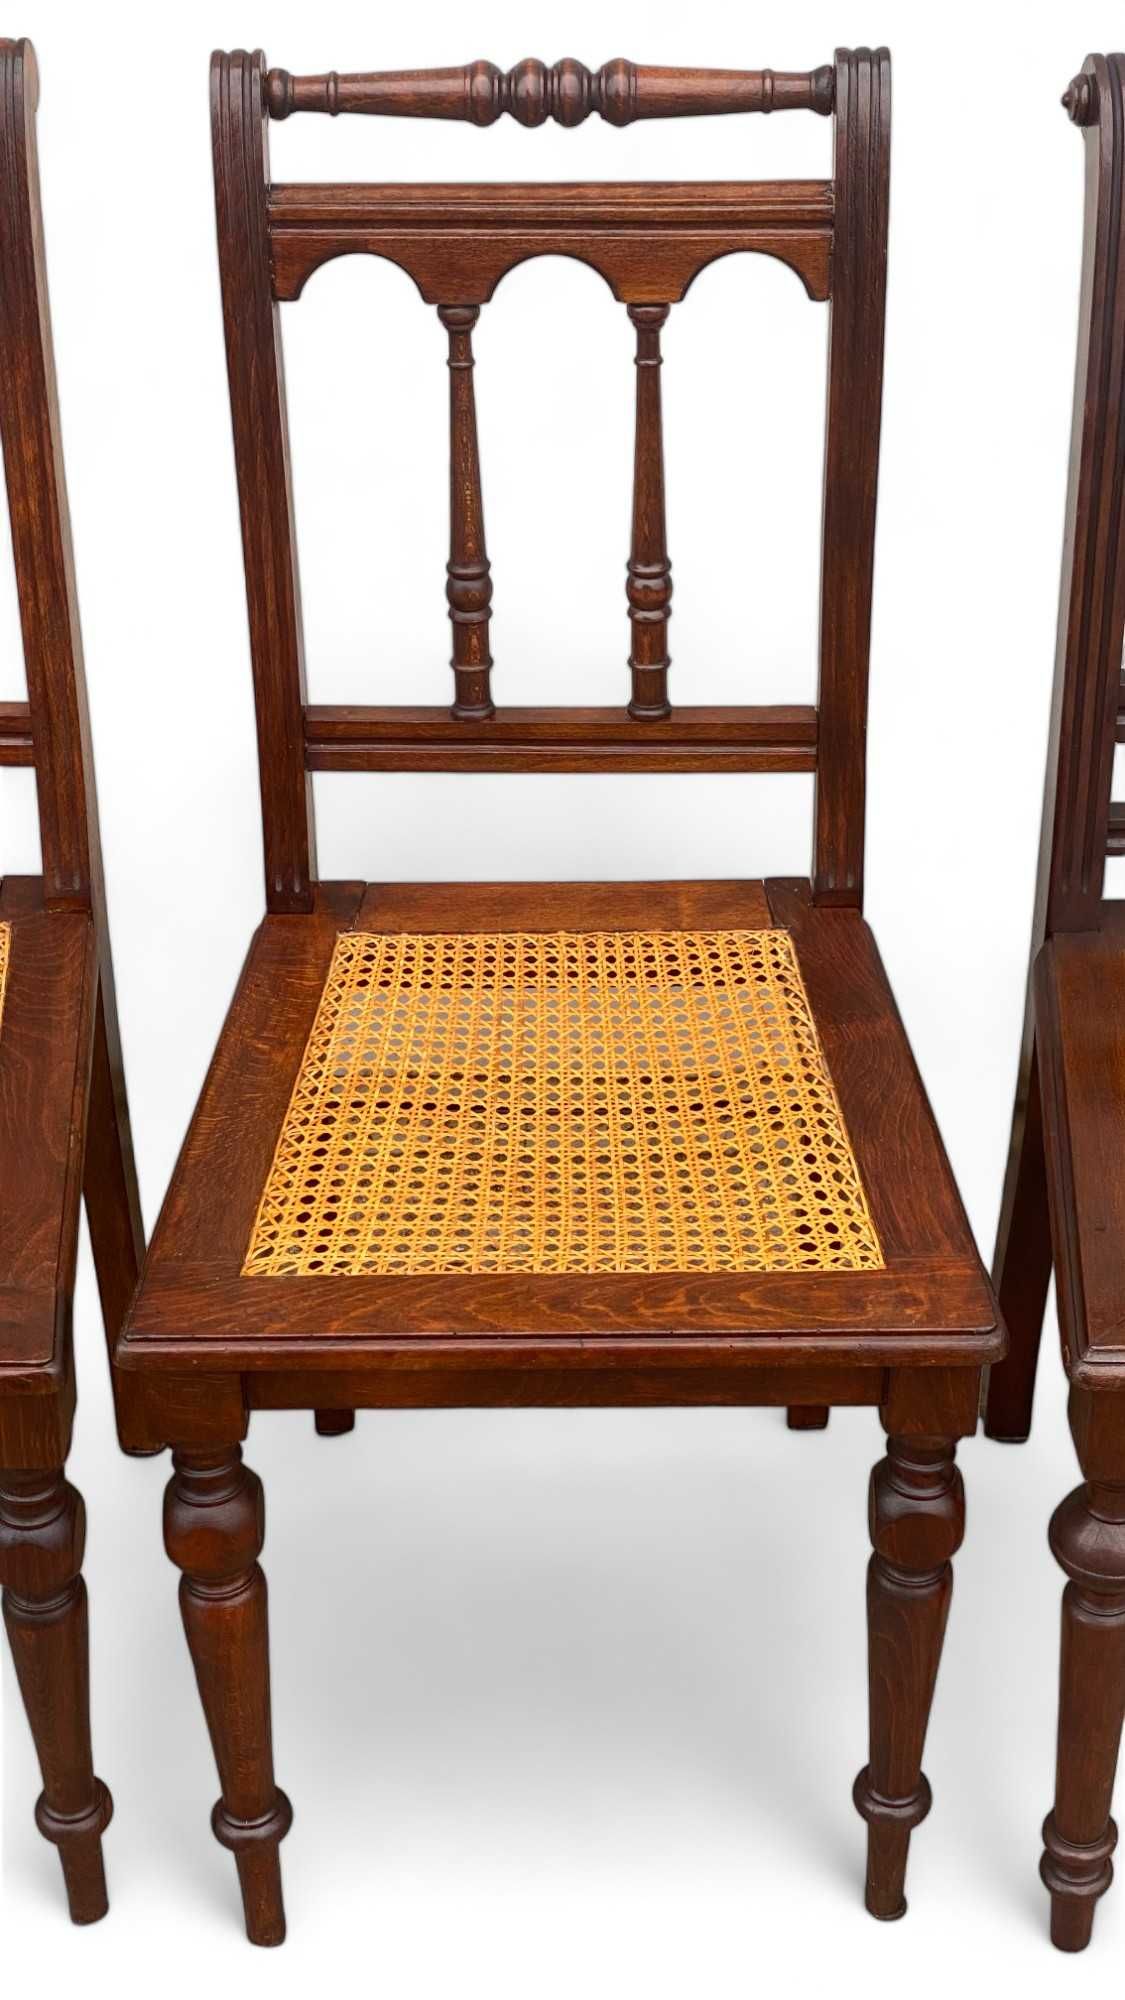 6 krzeseł eklektycznych z rafią KOMPLET, orzech, krzesła stylowe